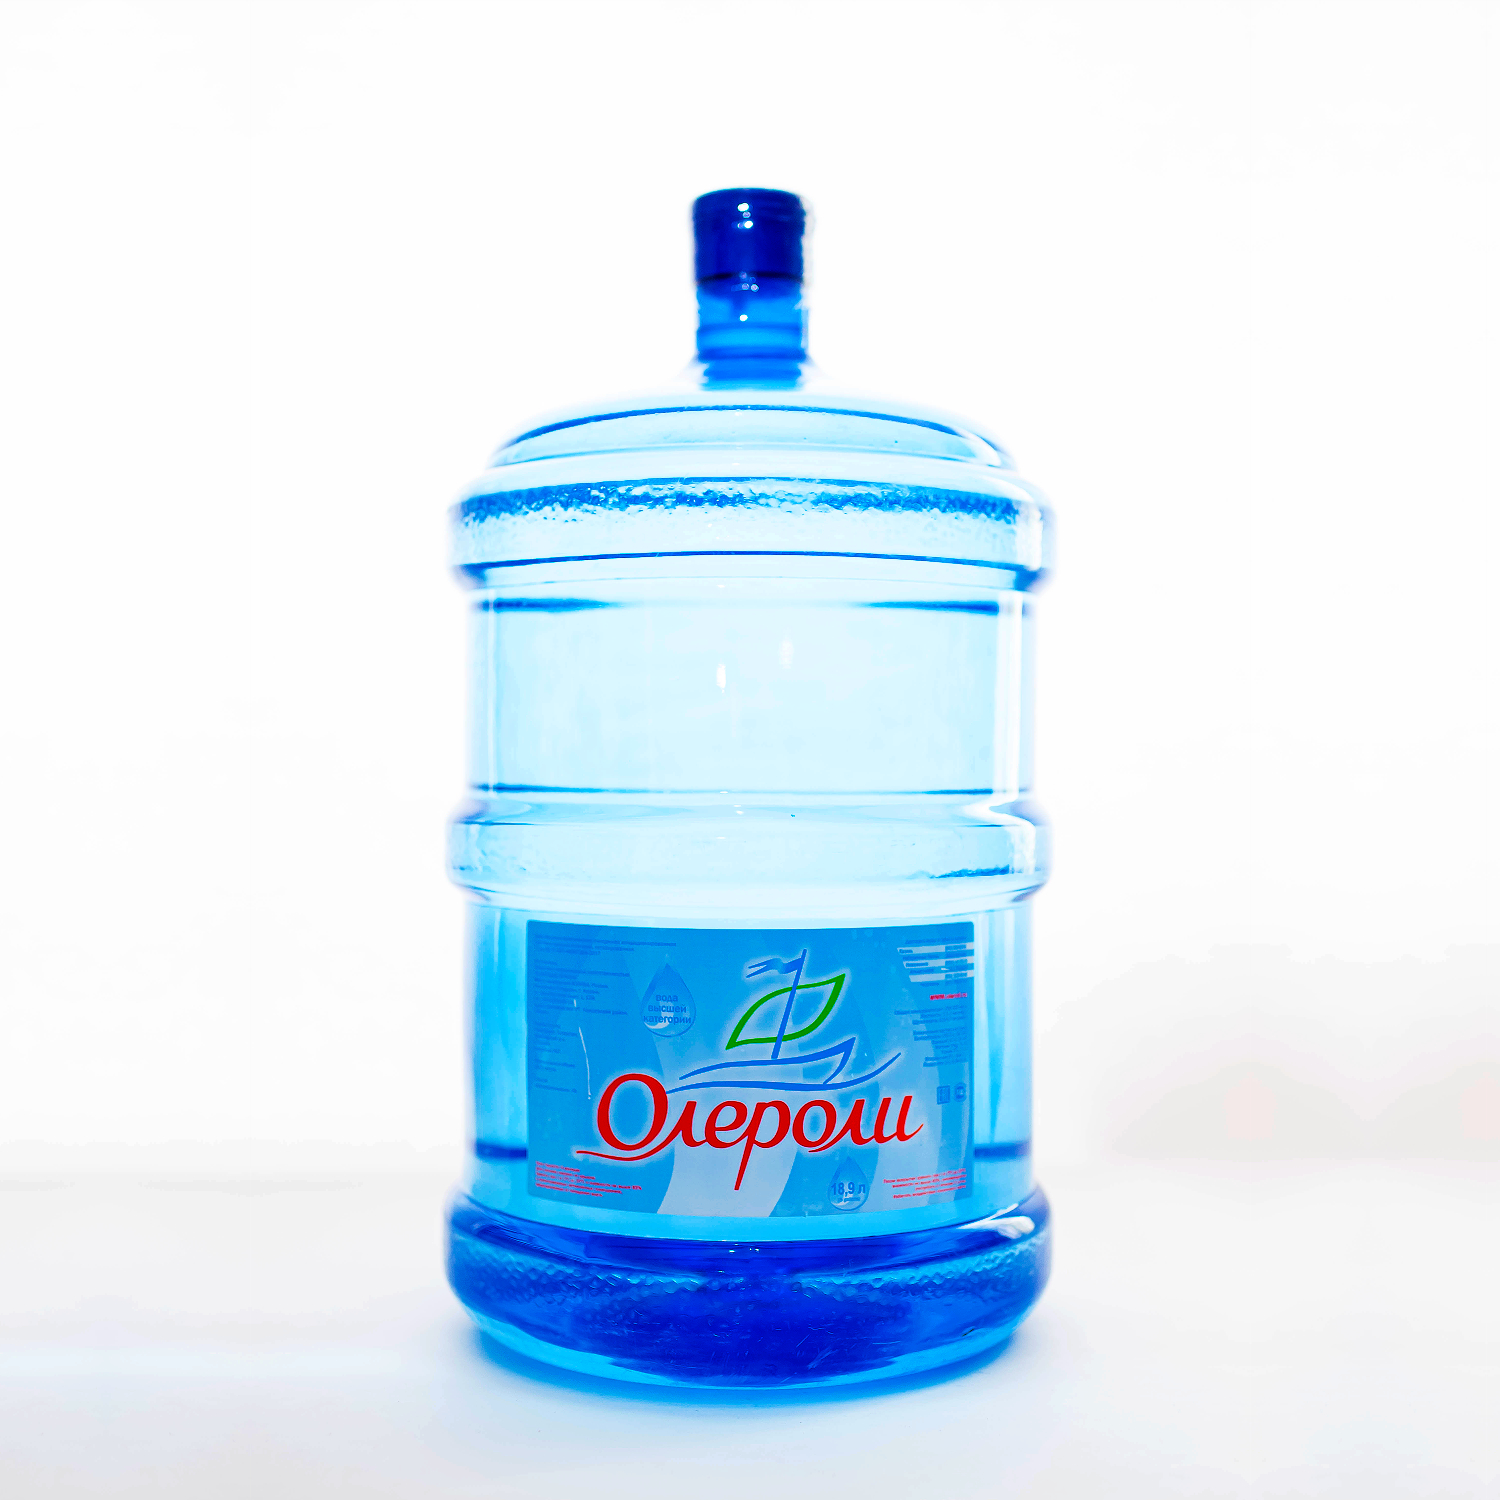 Питьевая вода «Олероли» негазированная (18,9 литра)